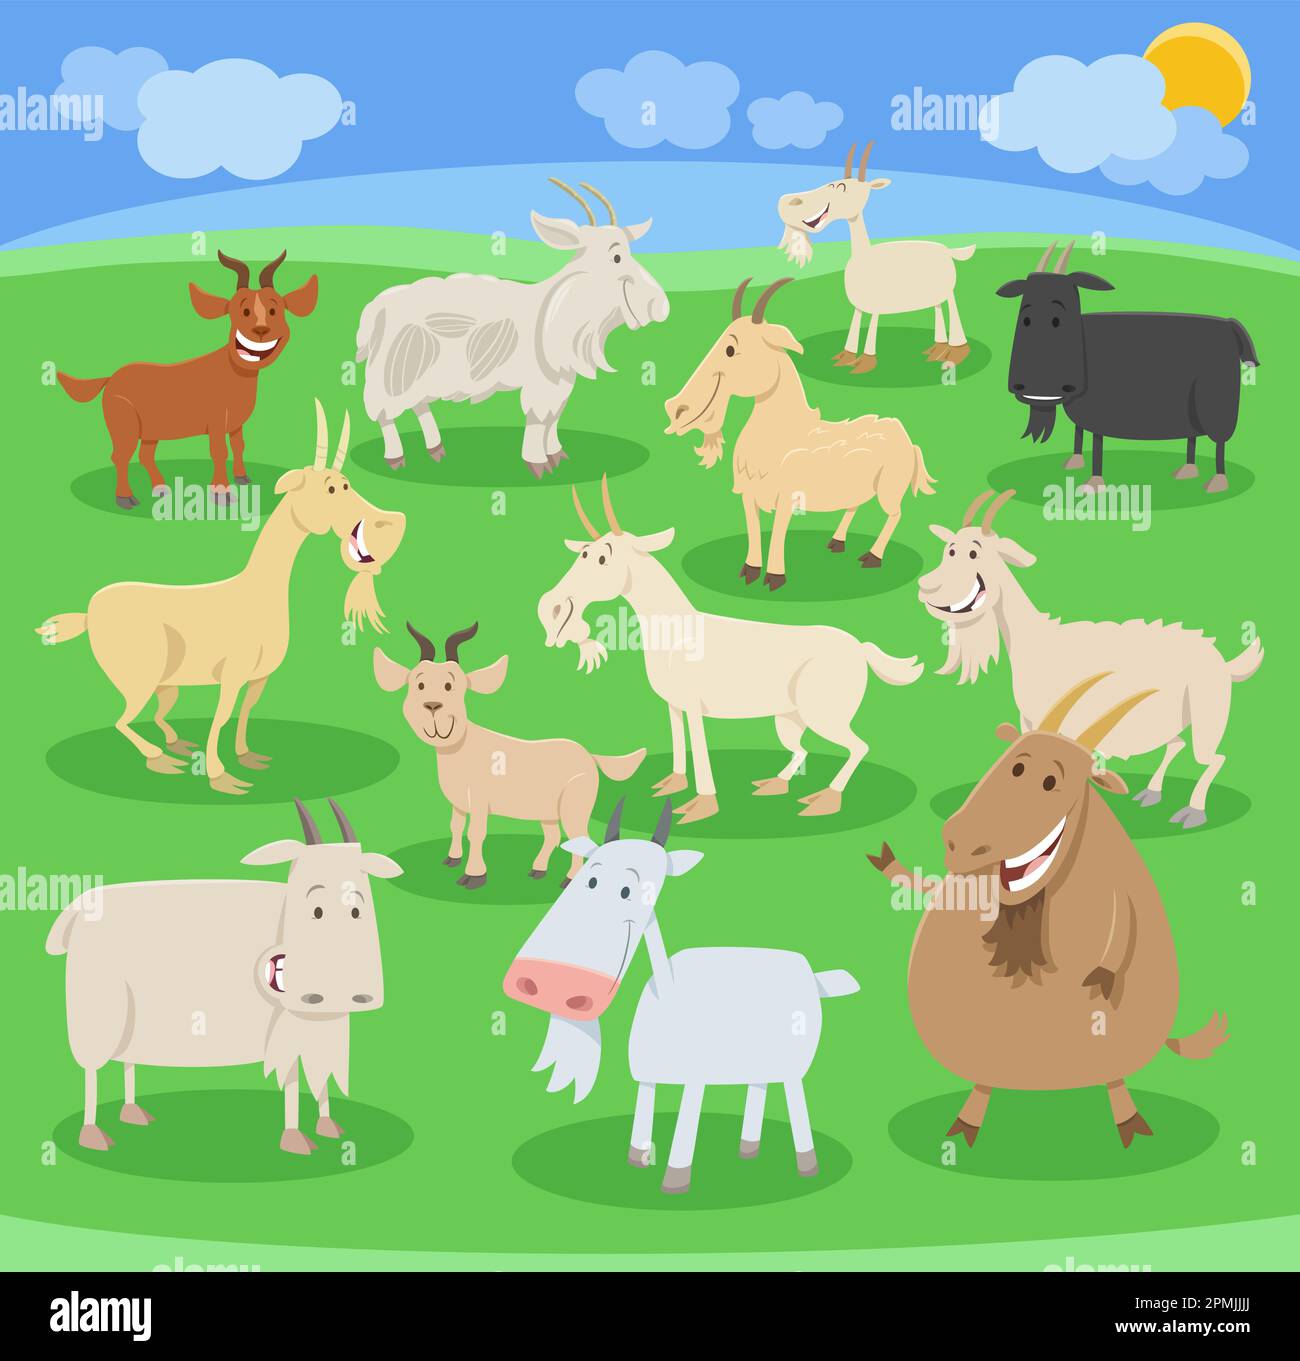 Illustration de dessin animé de chèvres drôle animaux de ferme personnages comiques ensemble Illustration de Vecteur